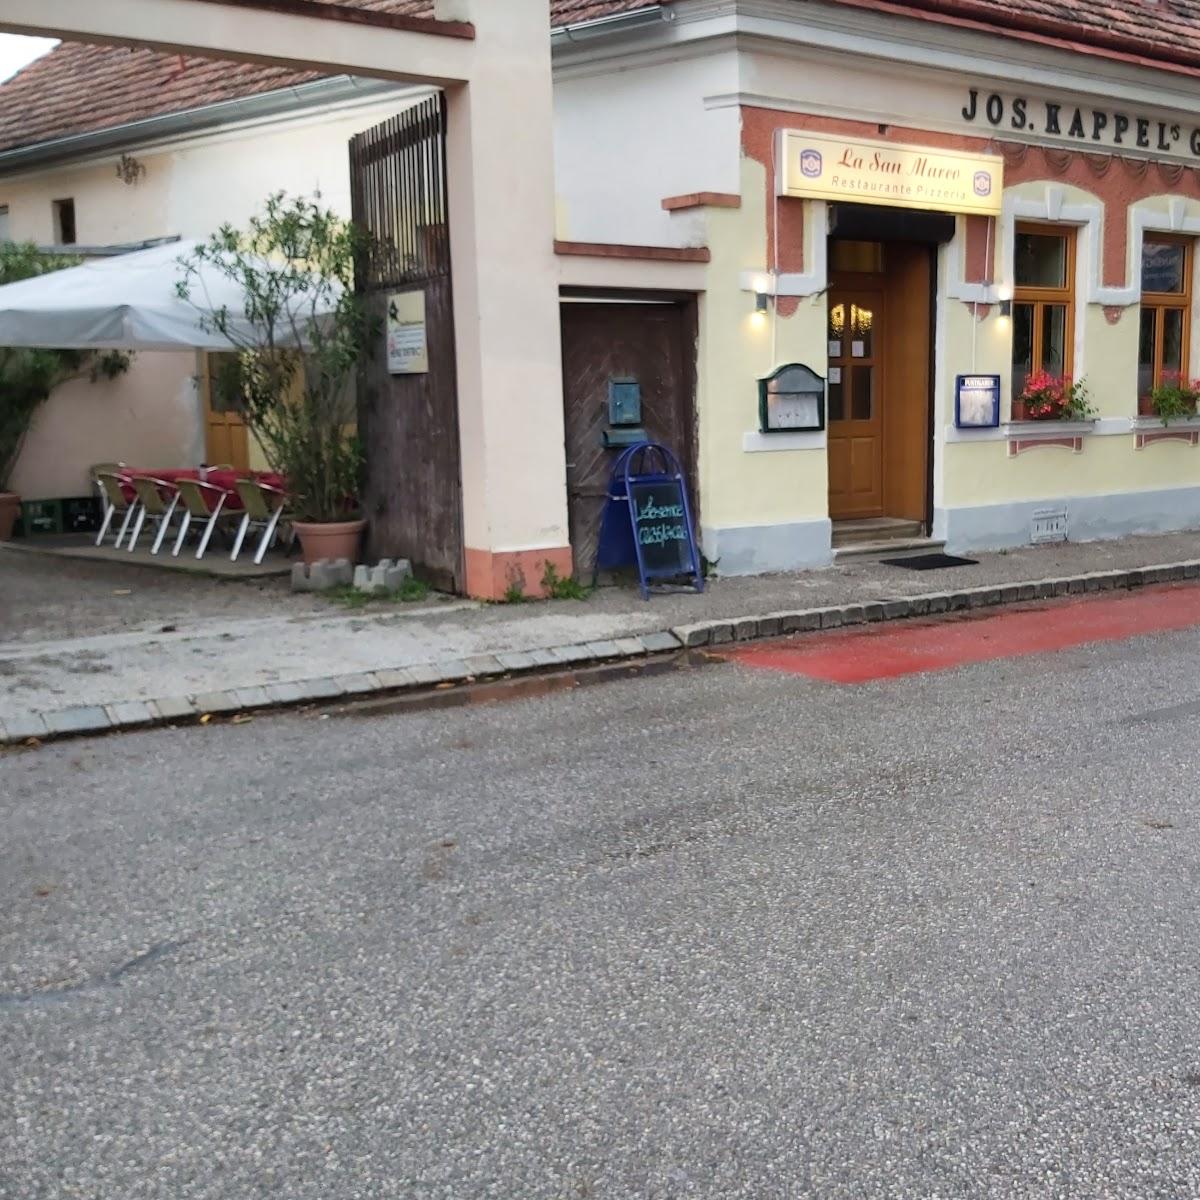 Restaurant "Pizzeria San Marco" in Loipersbach